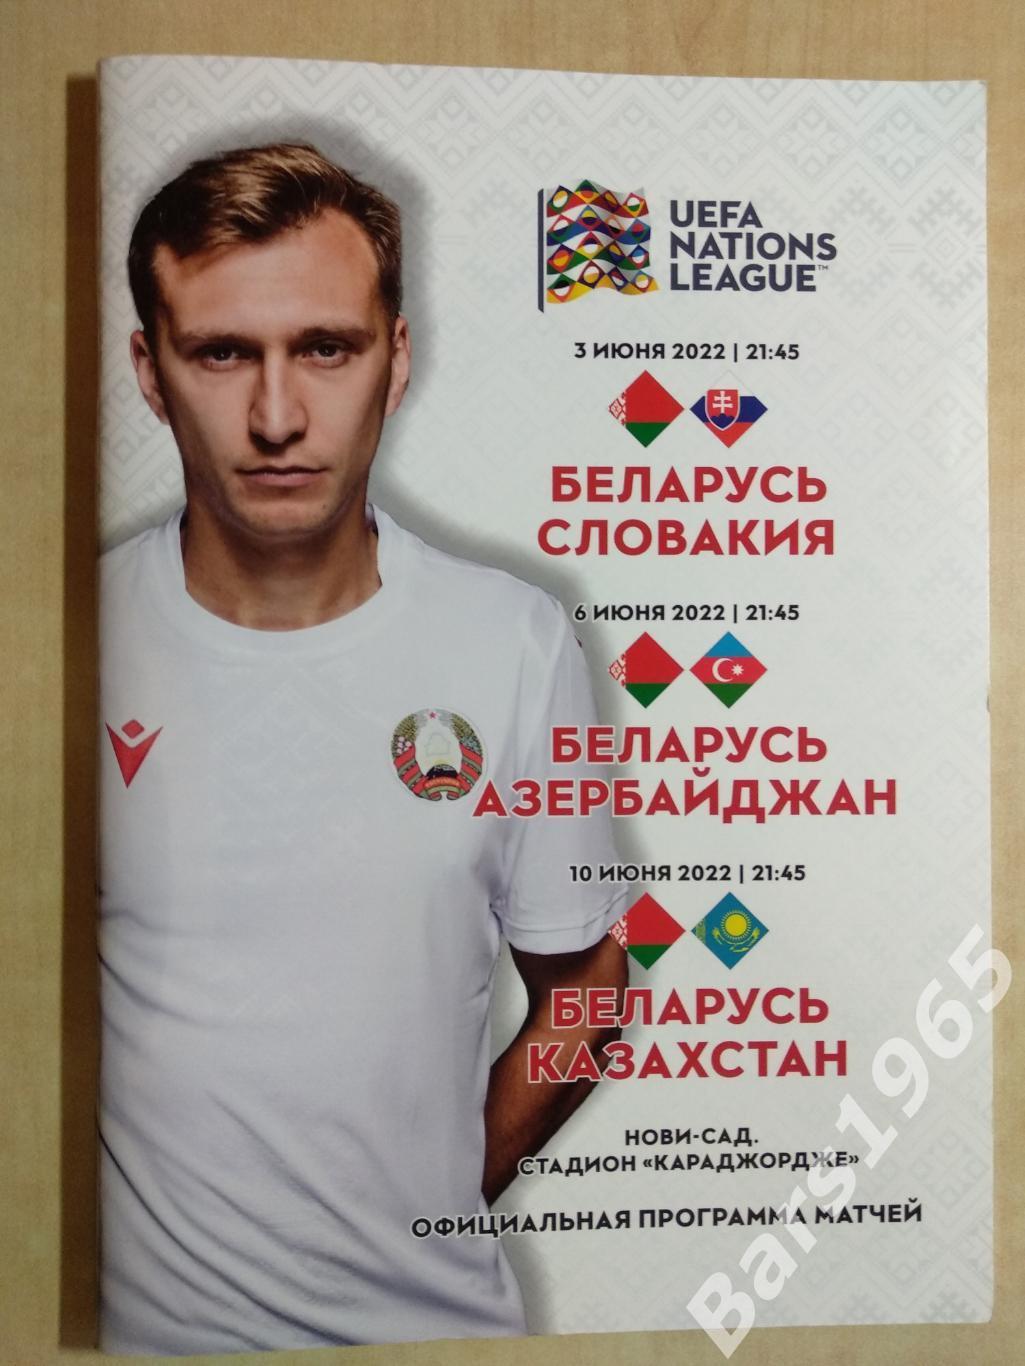 Беларусь - Словакия, Азербайджан, Казахстан 2022 Матчи в Сербии